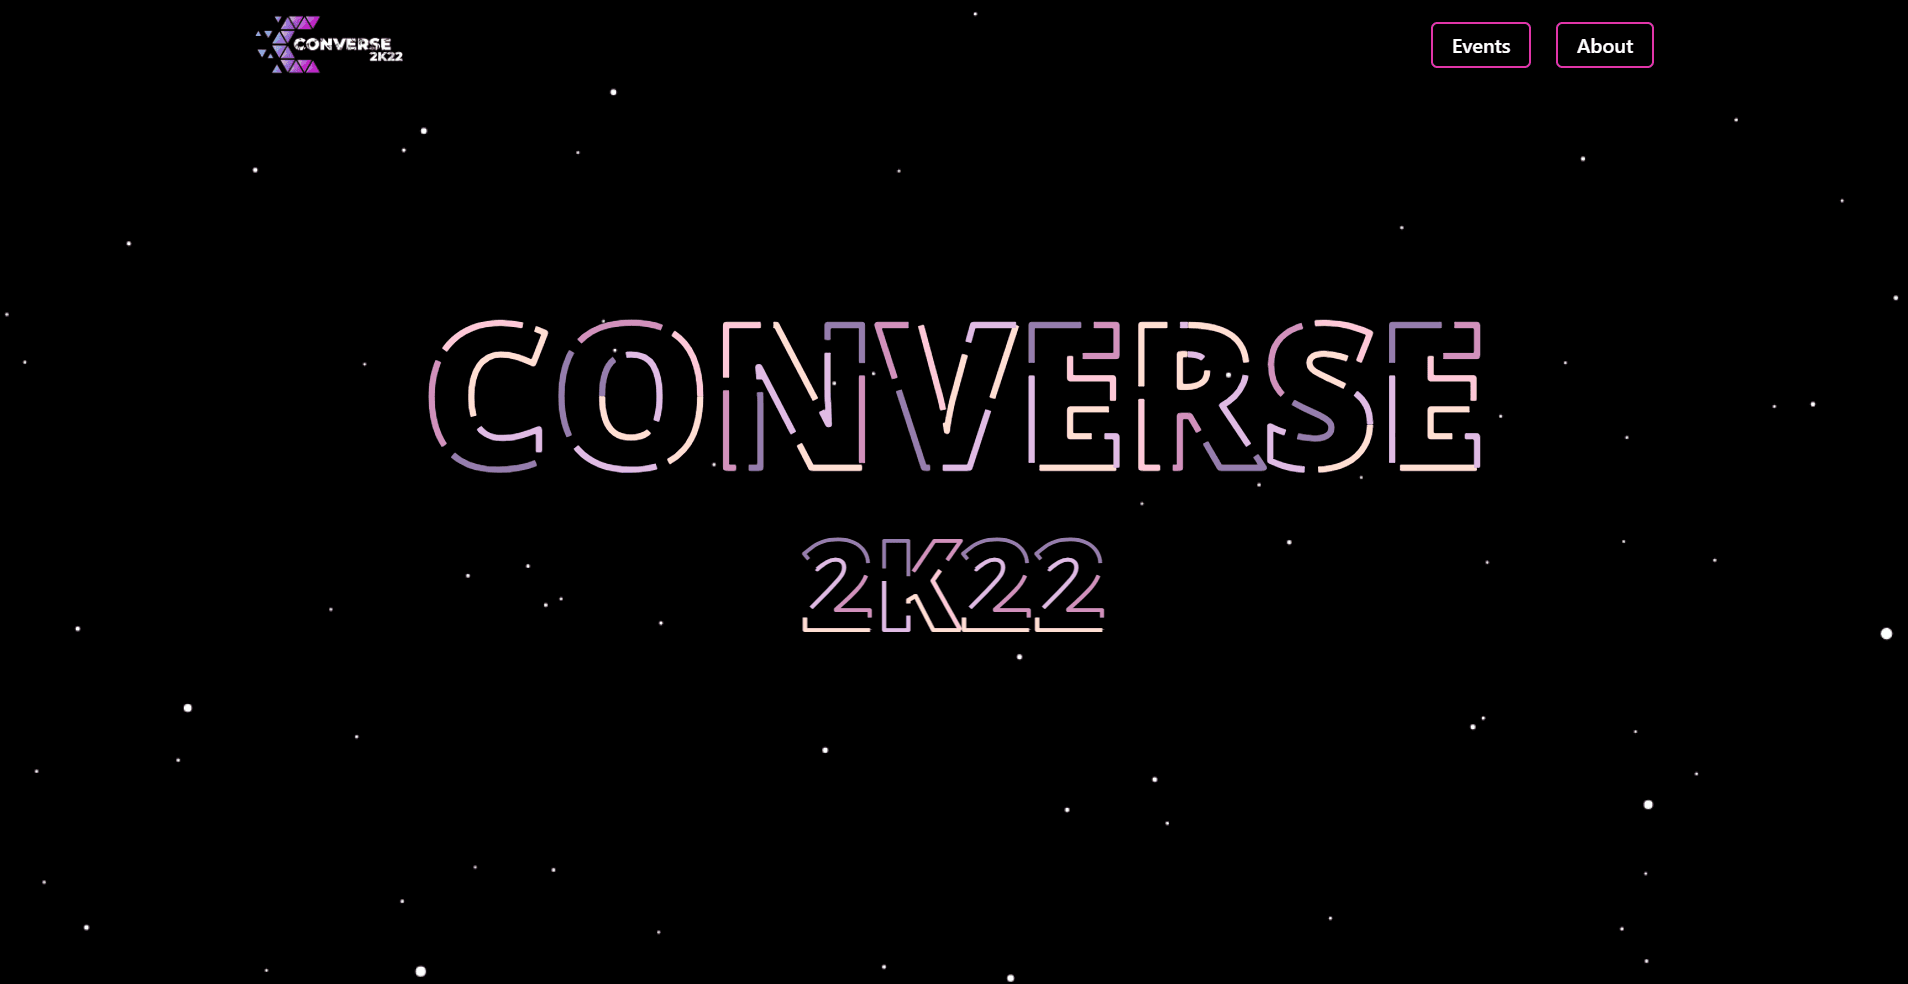 Converse 2k22